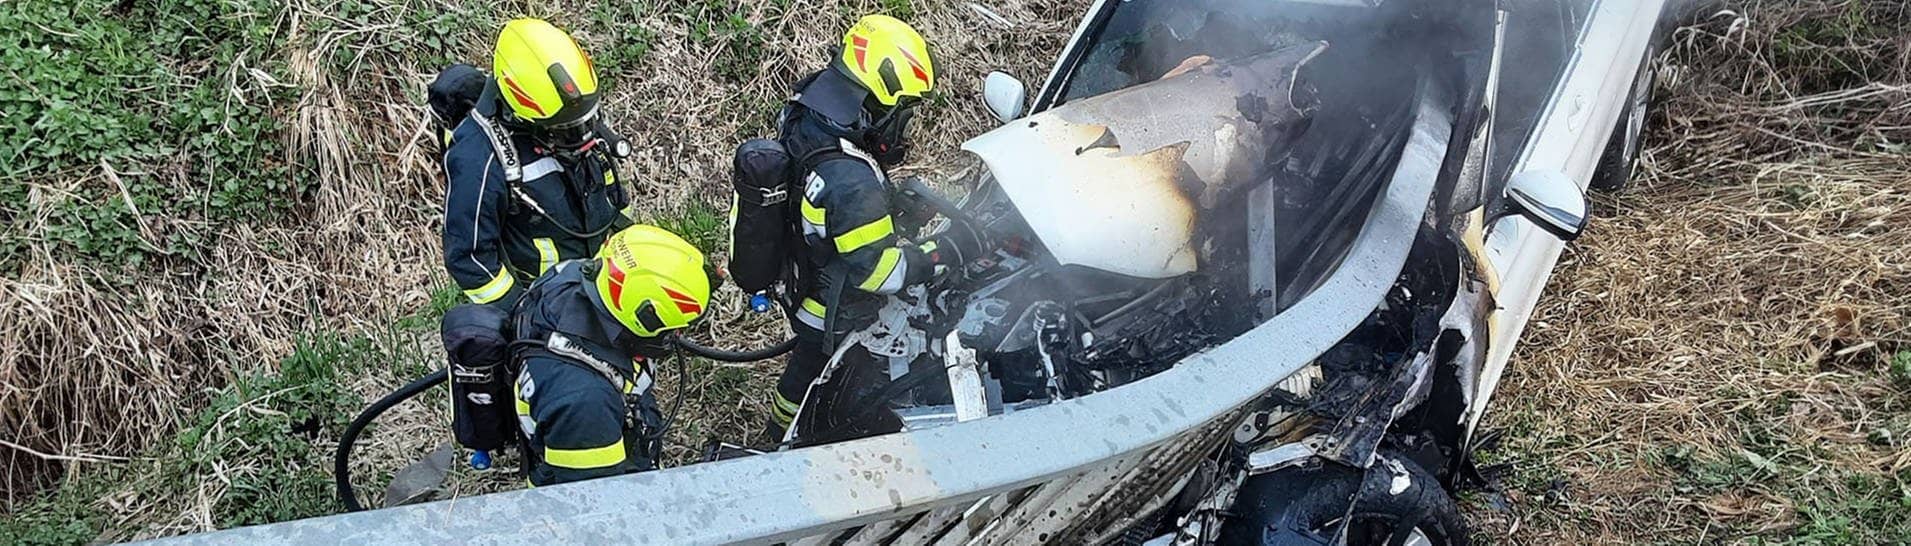 Feuerwehrleute der Freiwilligen Feuerwehr löschen den Brand nach dem schweren Autounfall in Österreich.